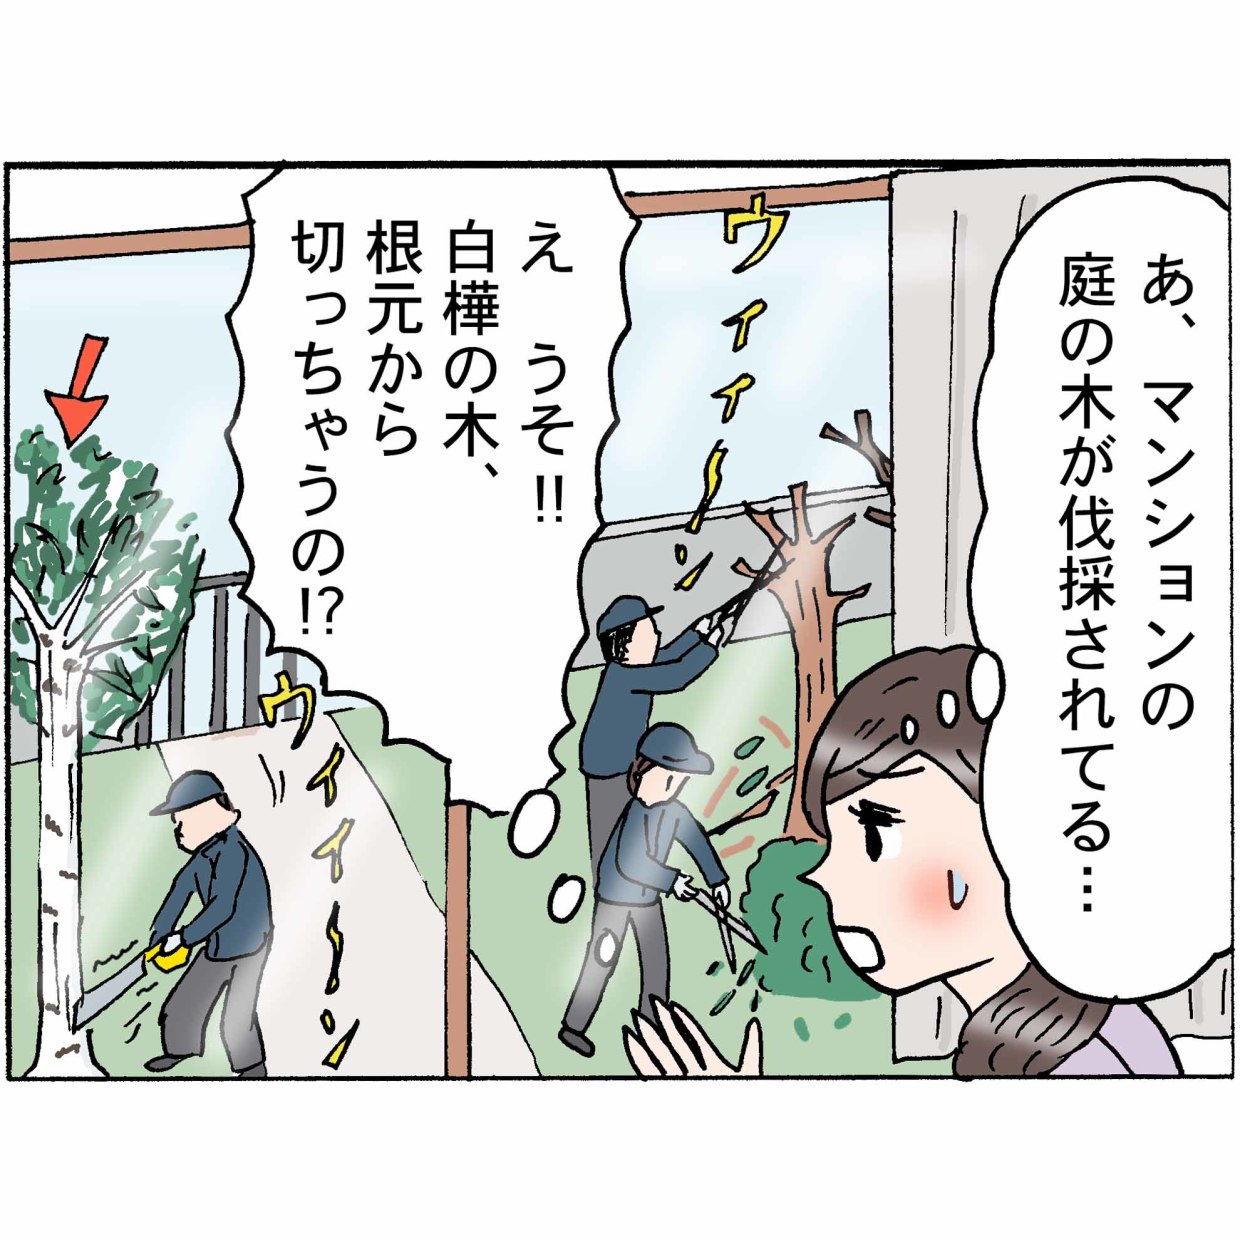 4コマ漫画 “鈴木ゆう子”の日常